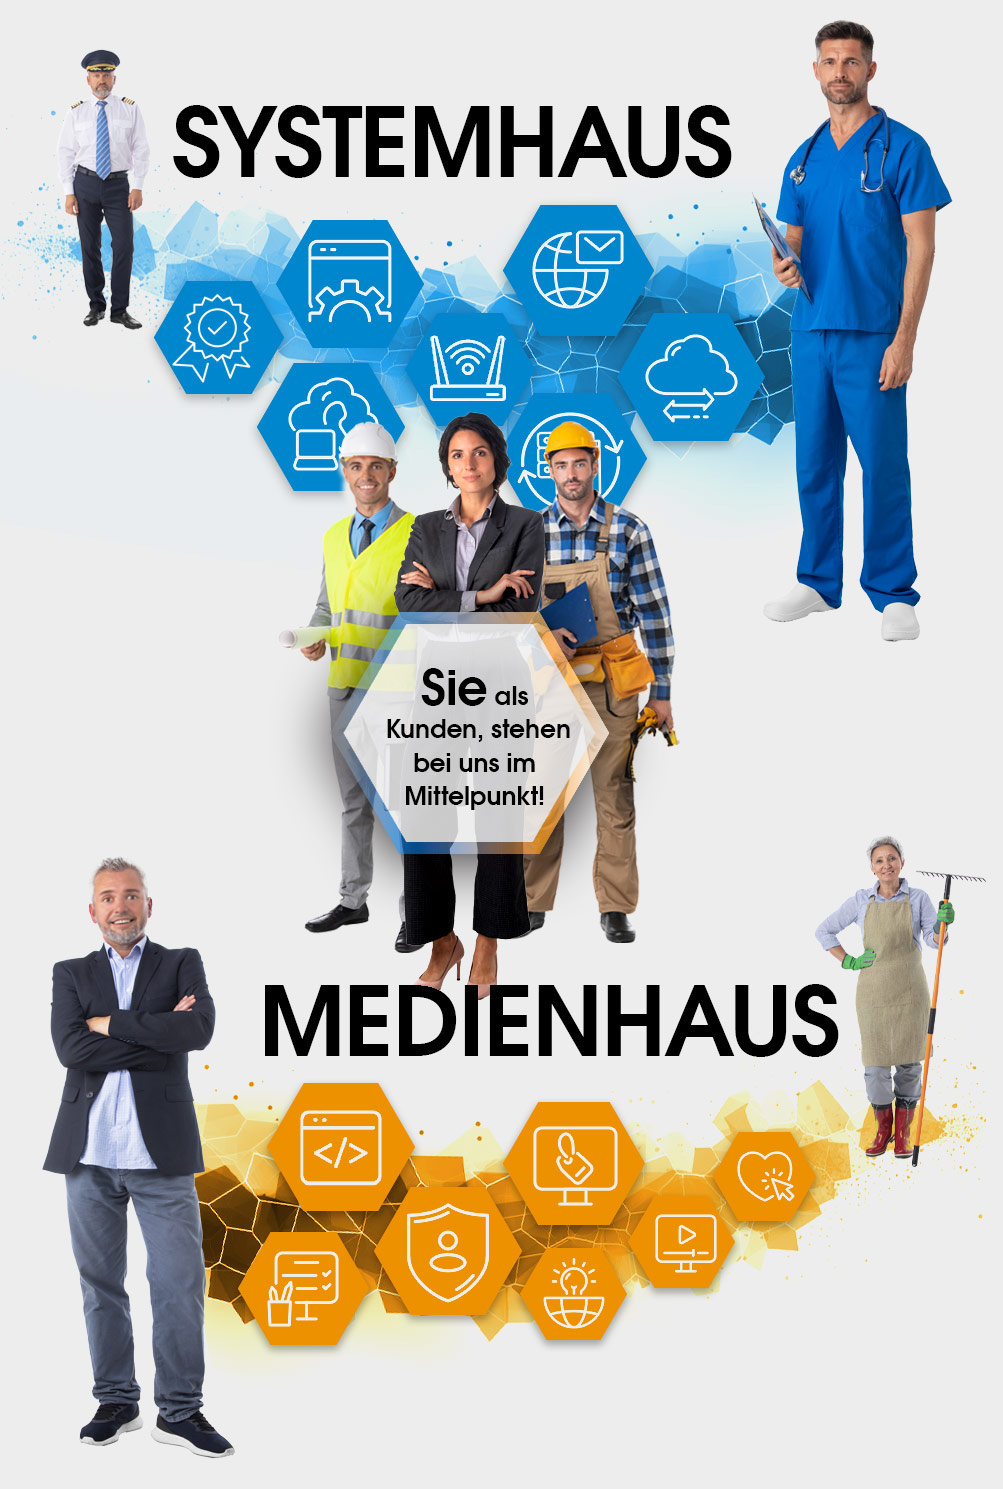 aks Service GmbH. DAS SYSTEM- & MEDIENHAUS.